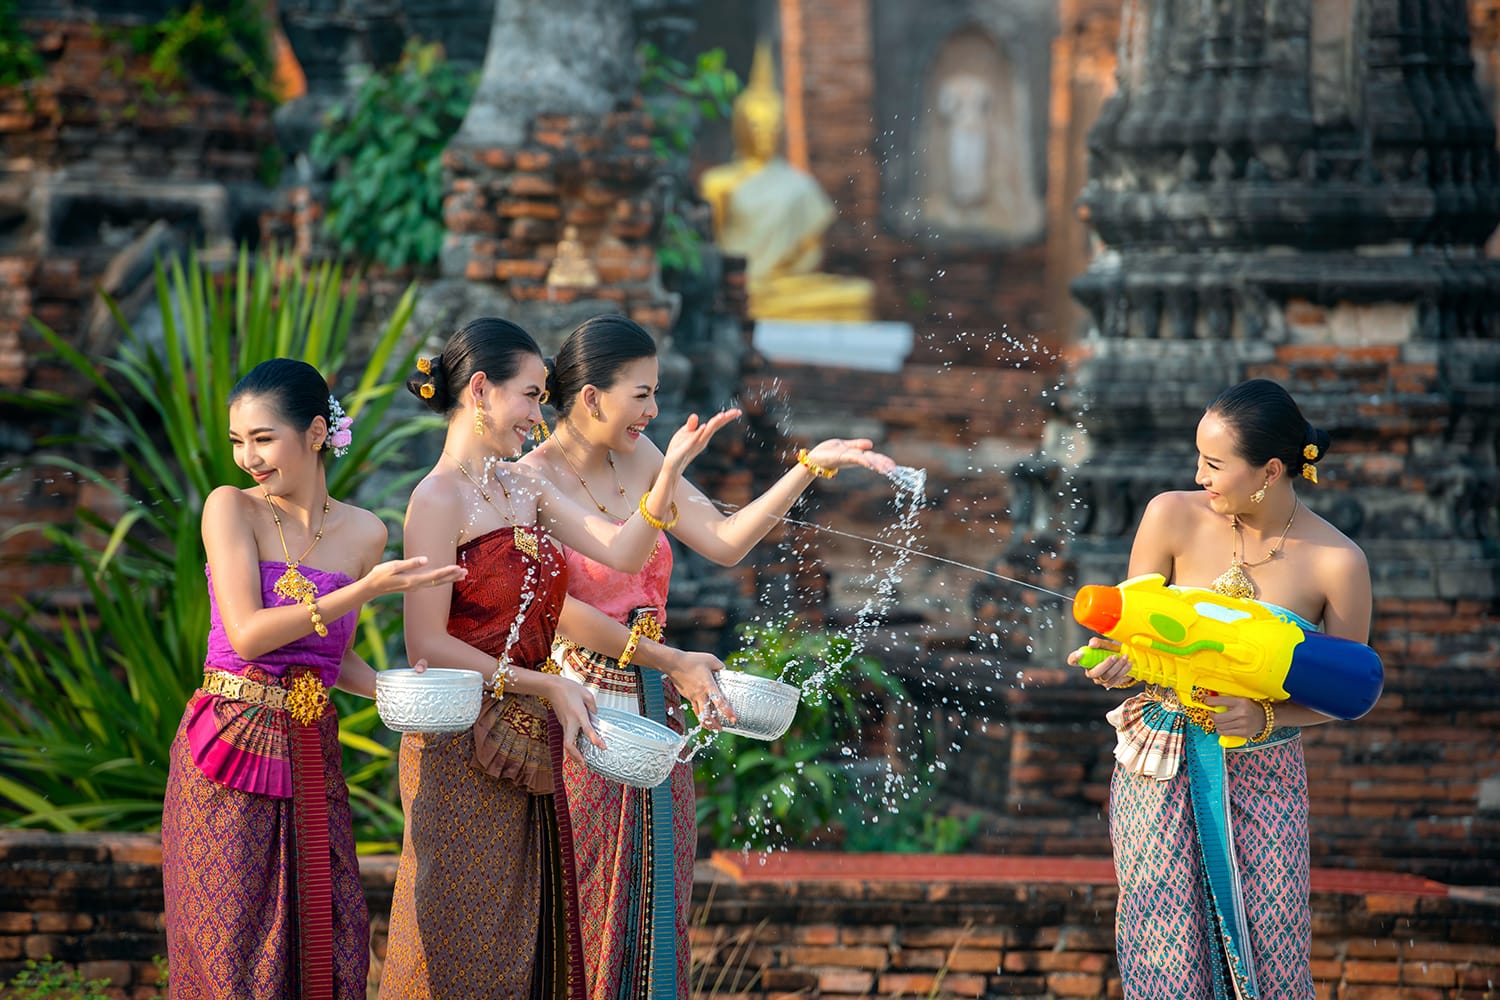 Φεστιβάλ Water Songkran.  Νεαρή γυναίκα από την Ασία που φοράει ταϊλανδέζικη παραδοσιακή φορεσιά παίζει νερό στο ημερήσιο φεστιβάλ νερού Songkran της Ταϊλάνδης.  Ομάδα γυναικών που χρησιμοποιούν πιστόλι νερού και παίζουν με τόξα στο ναό.